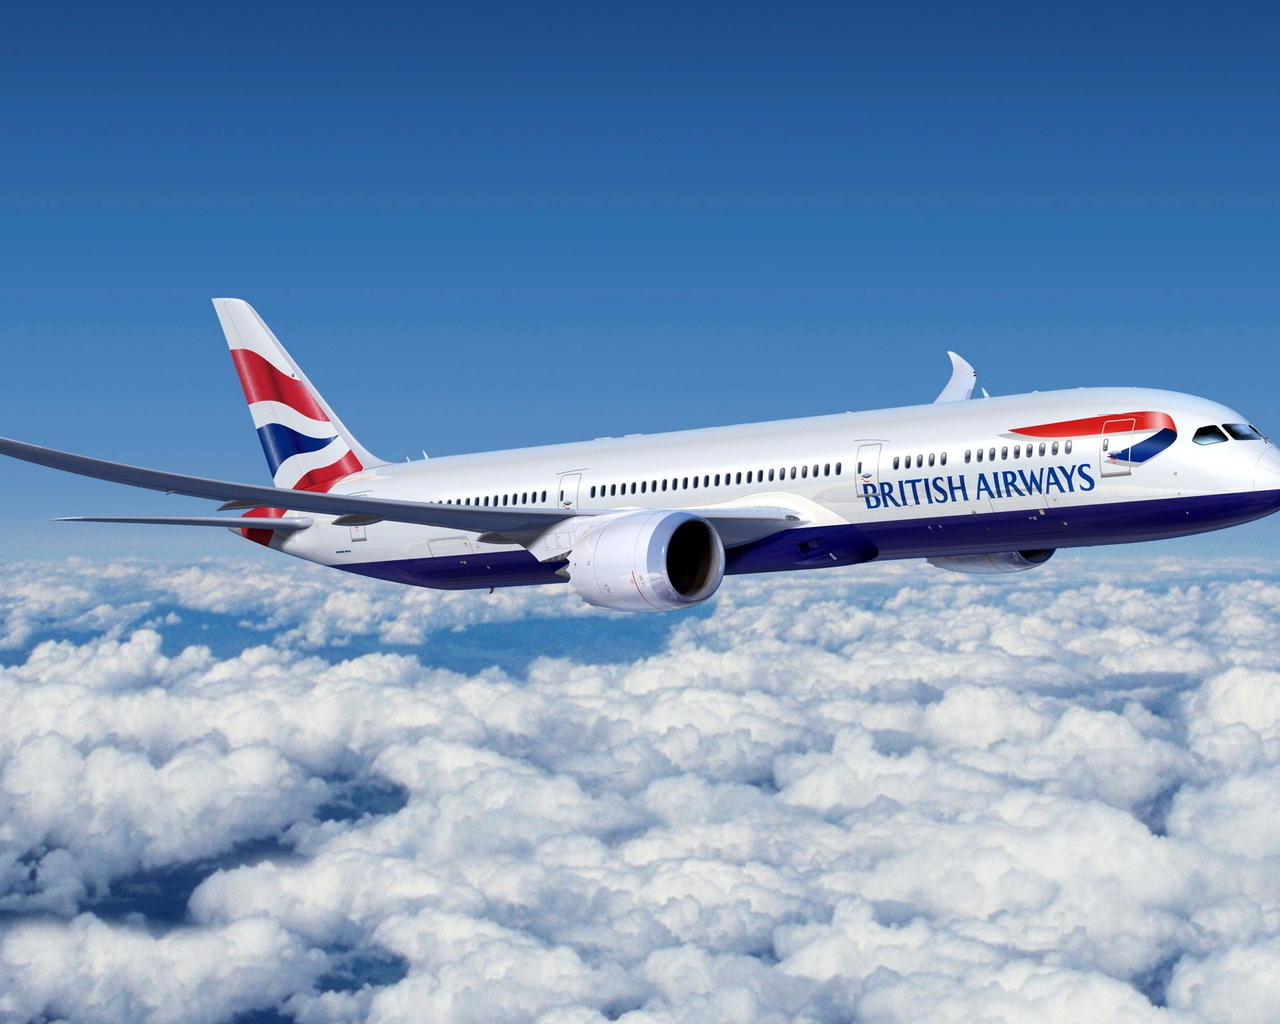 British Airways for 1280 x 1024 resolution